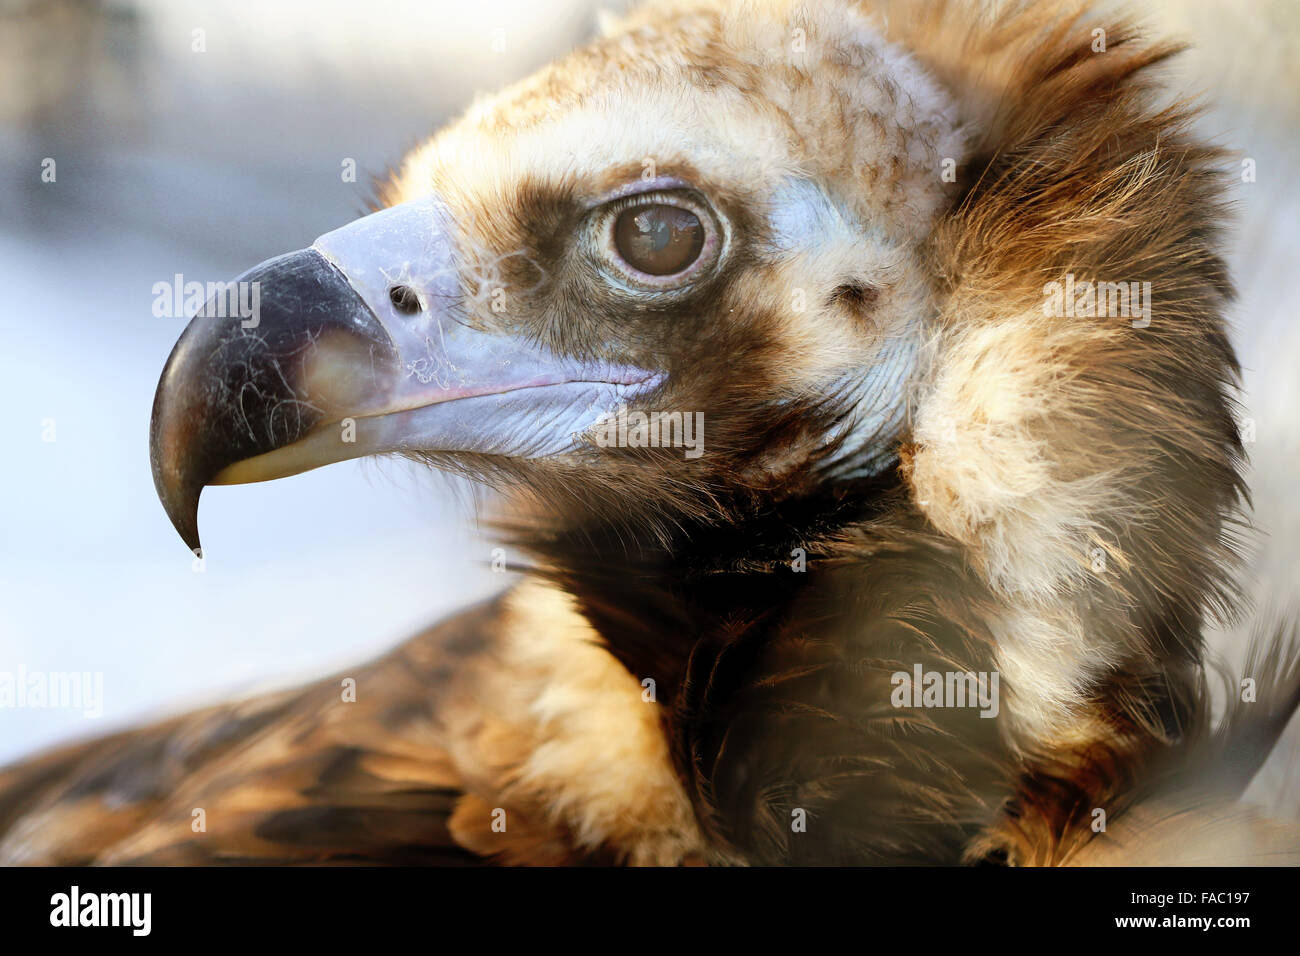 Schönes Porträt eines Adlers fotografiert hautnah Stockfoto